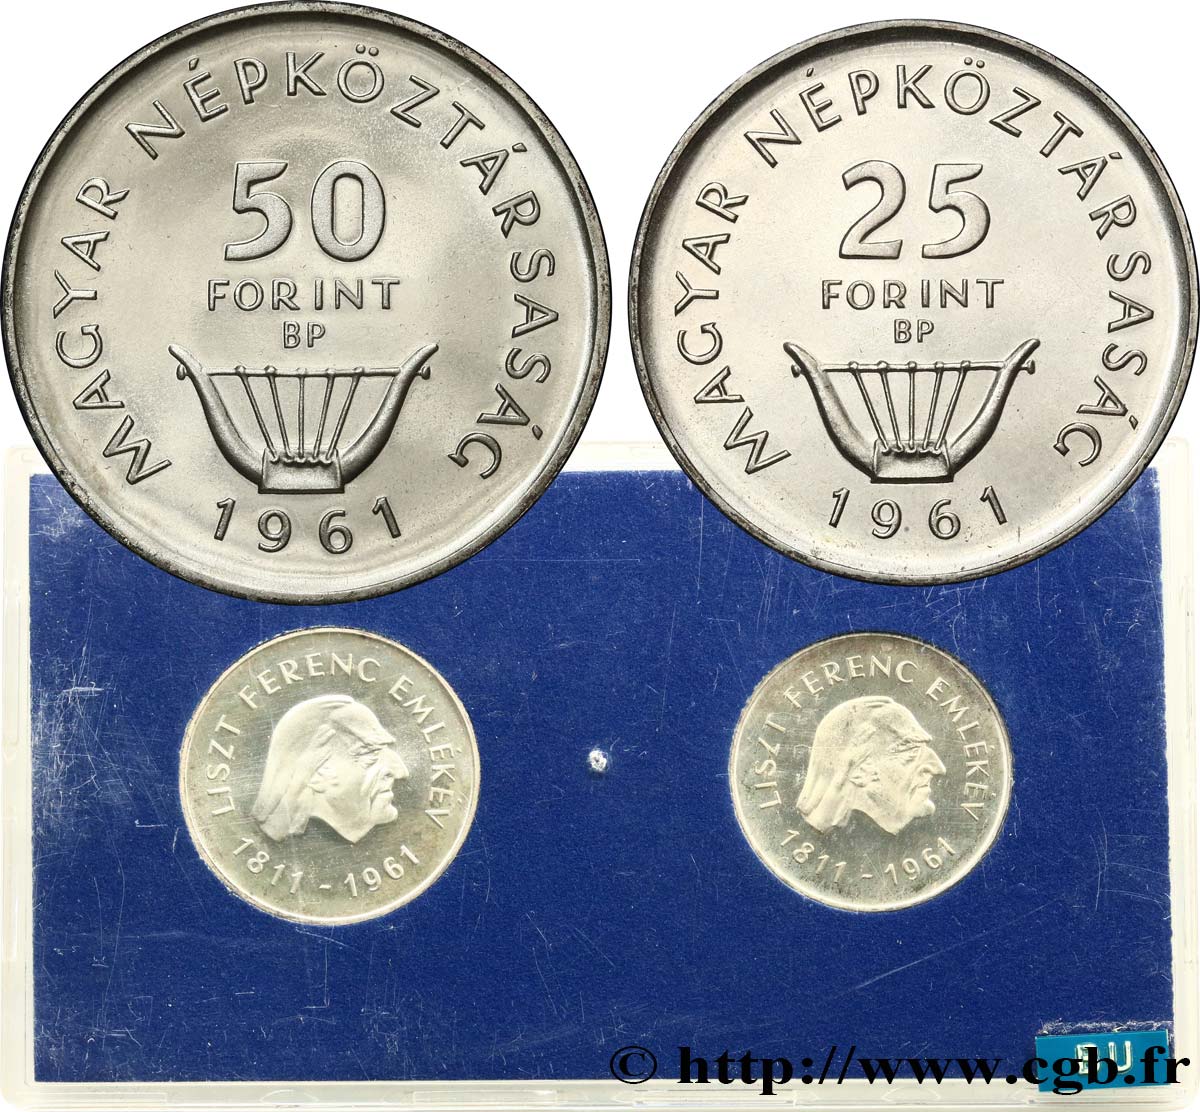 UNGHERIA Série Proof - 2 monnaies - Forint 150e anniversaire naissance de Ferenc (Franz) Liszt 1961 Budapest SPL 